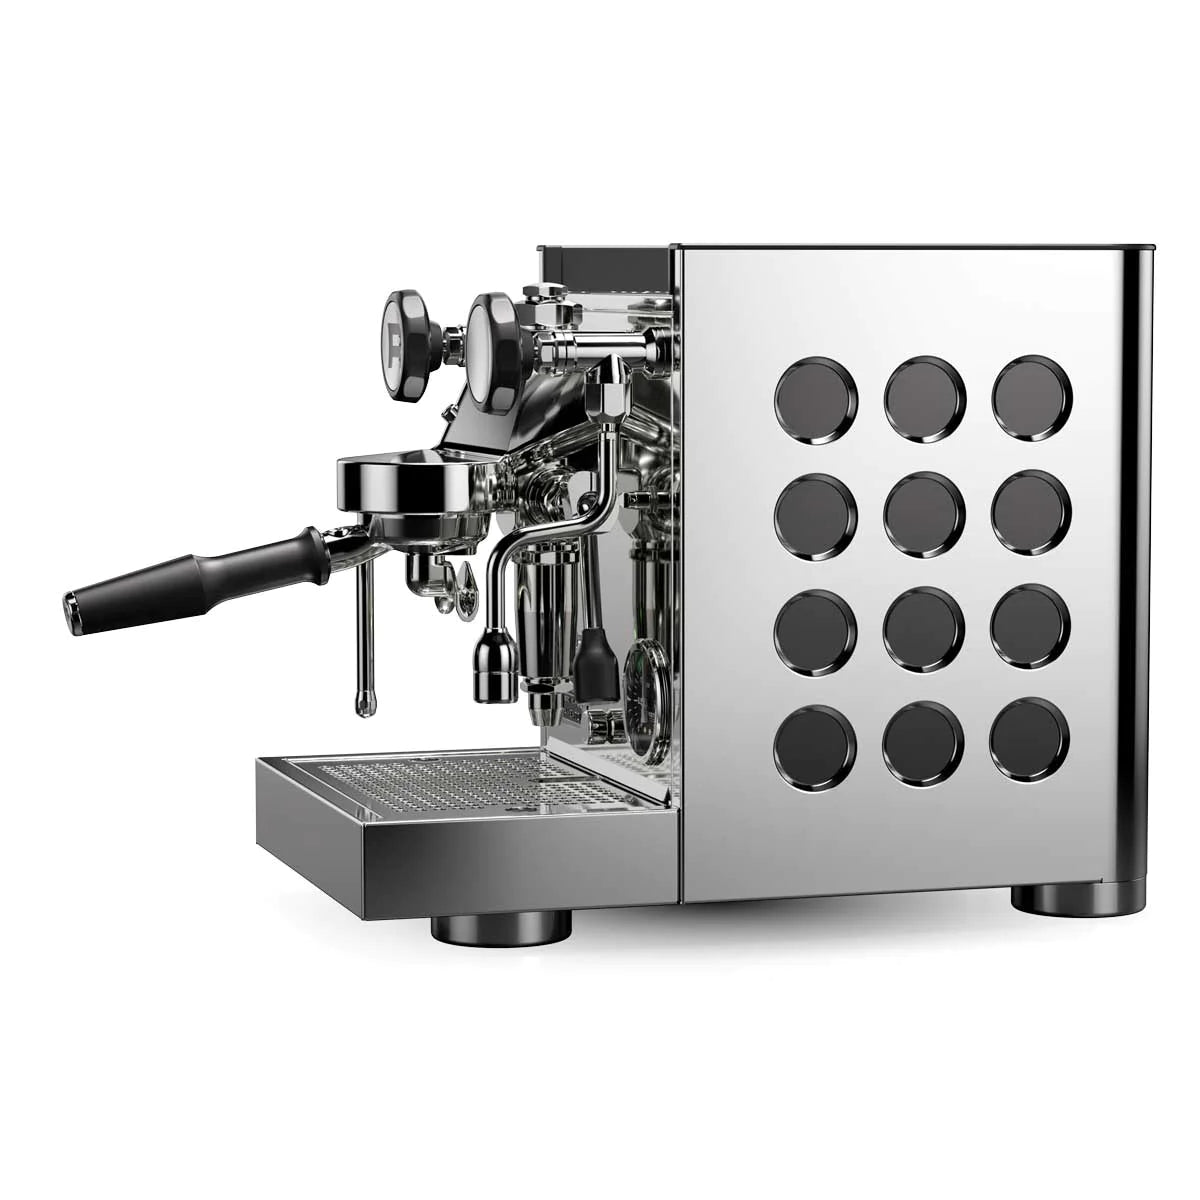 Rocket Espresso Appartamento TCA Stainless Professional Home Espresso Machine